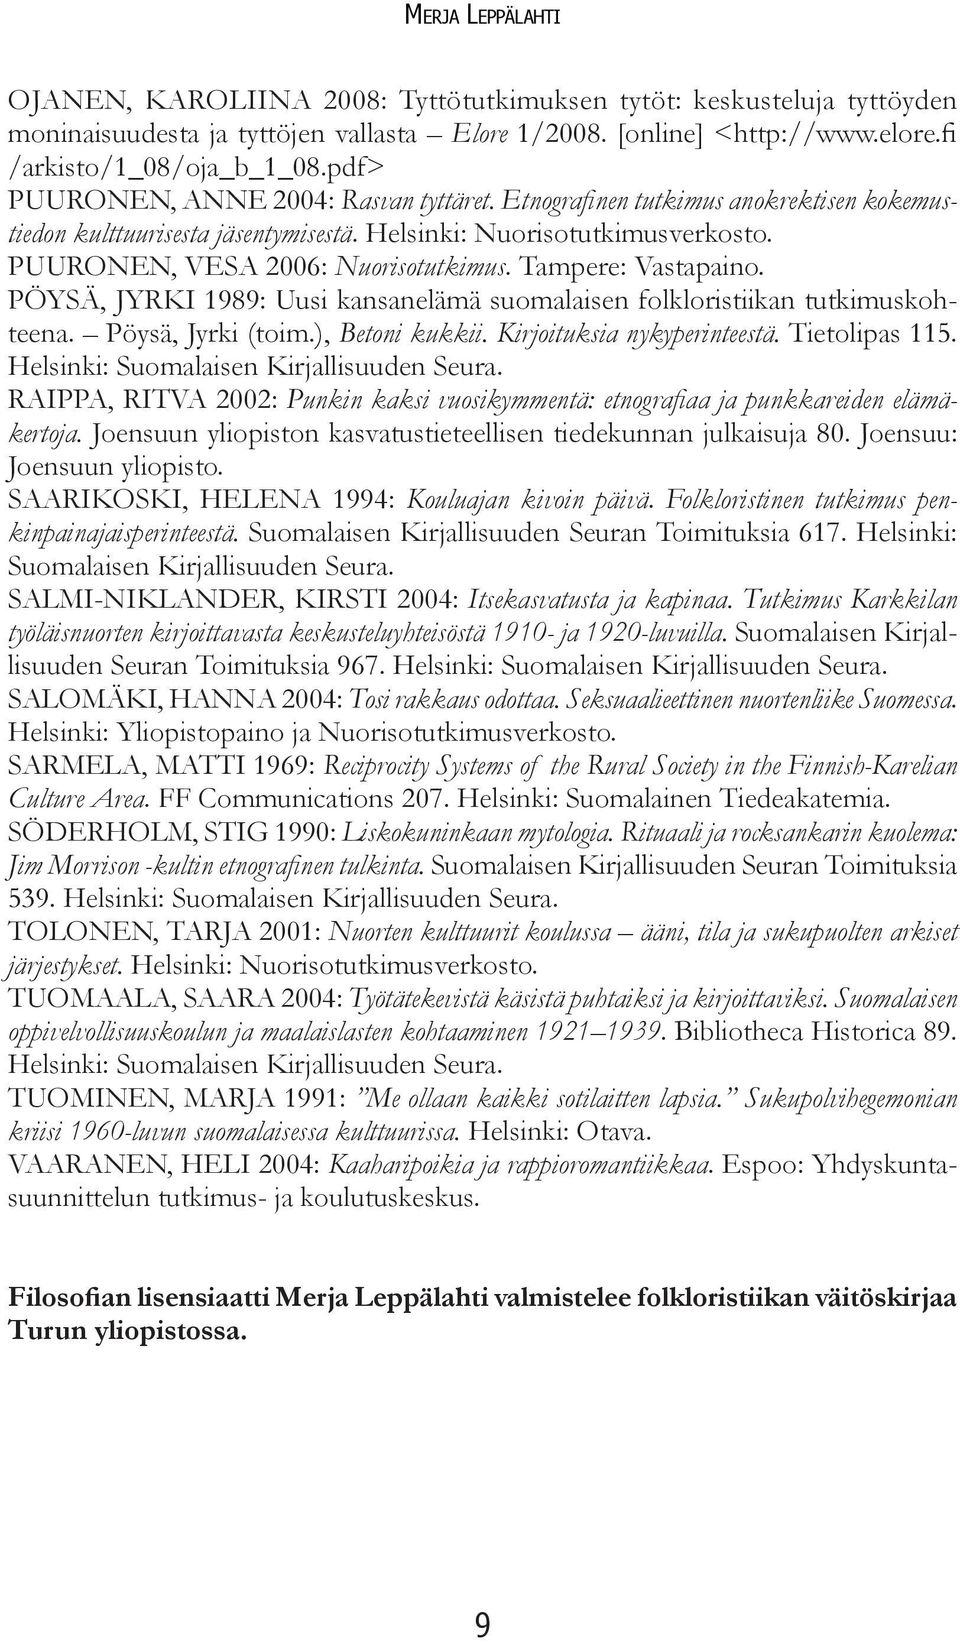 Tampere: Vastapaino. PÖYSÄ, JYRKI 1989: Uusi kansanelämä suomalaisen folkloristiikan tutkimuskohteena. Pöysä, Jyrki (toim.), Betoni kukkii. Kirjoituksia nykyperinteestä. Tietolipas 115.